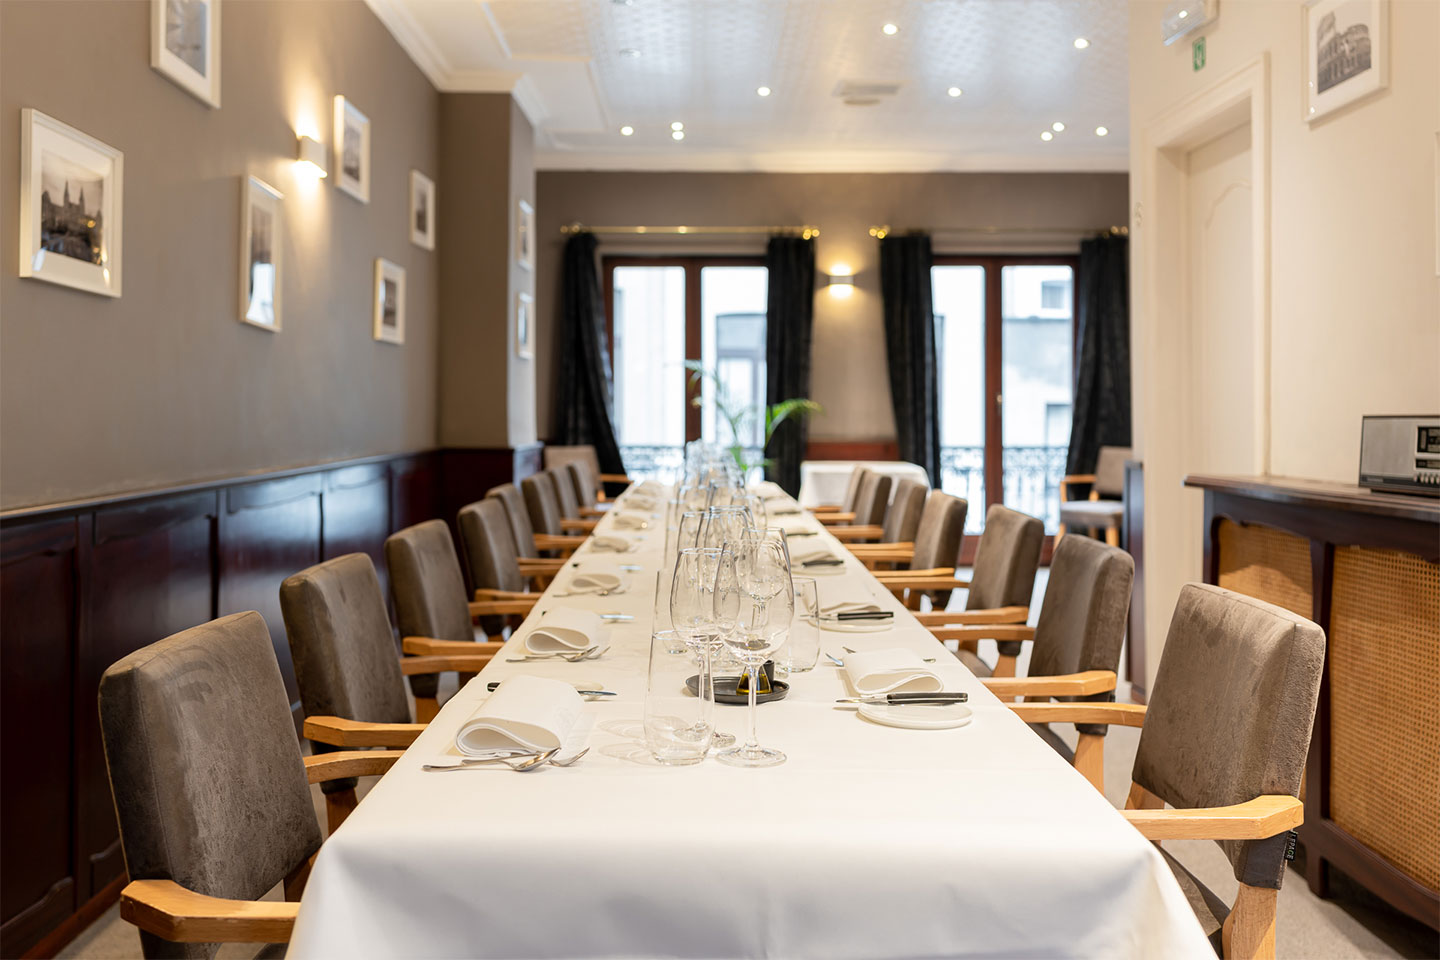 Salon privé - Stirwen - Etterbeek - Bruxelles - Cuisine Gastronomique - salle privative repas affaire événements privés